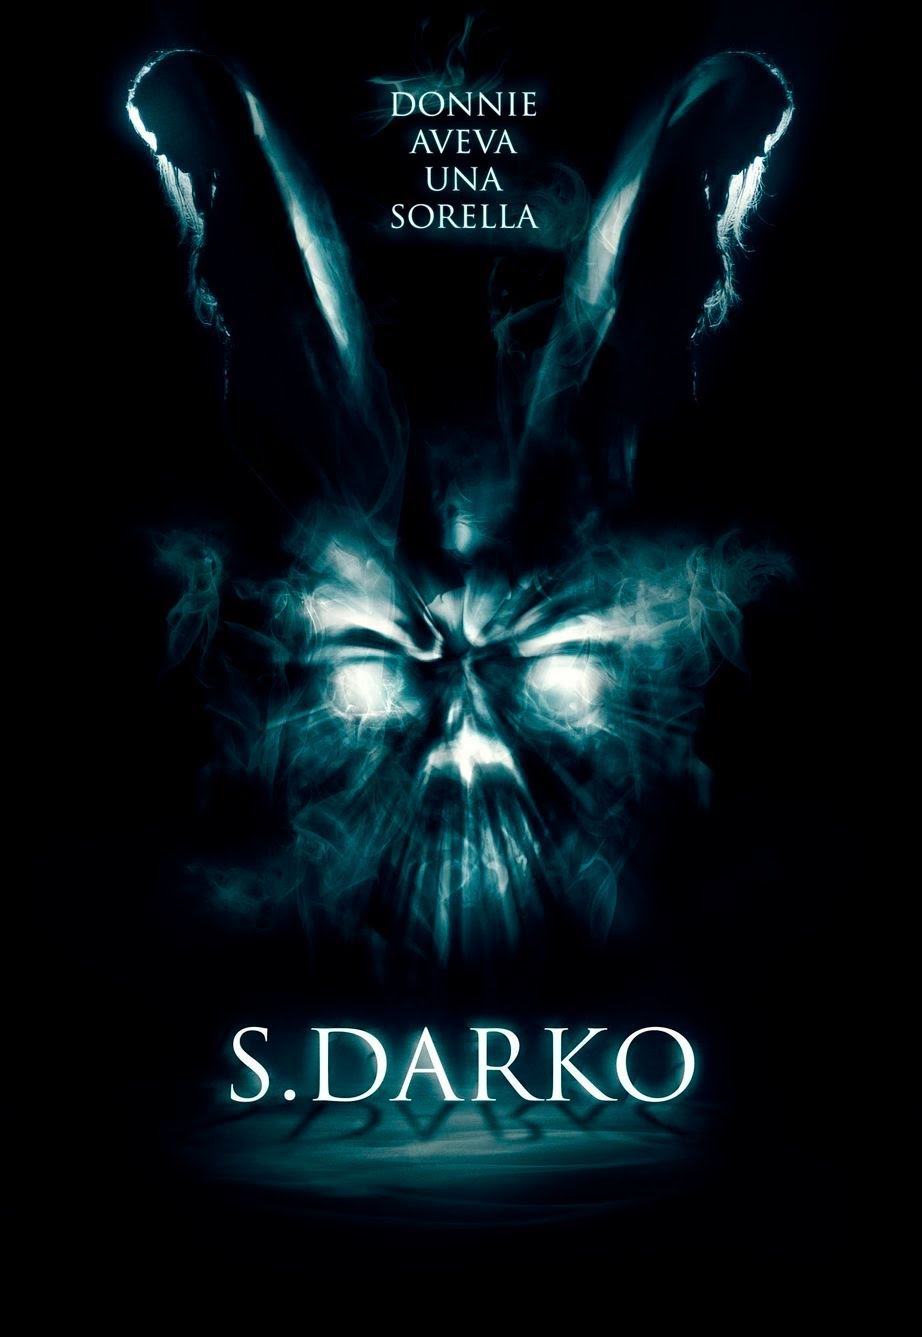 S. Darko [HD] (2009)